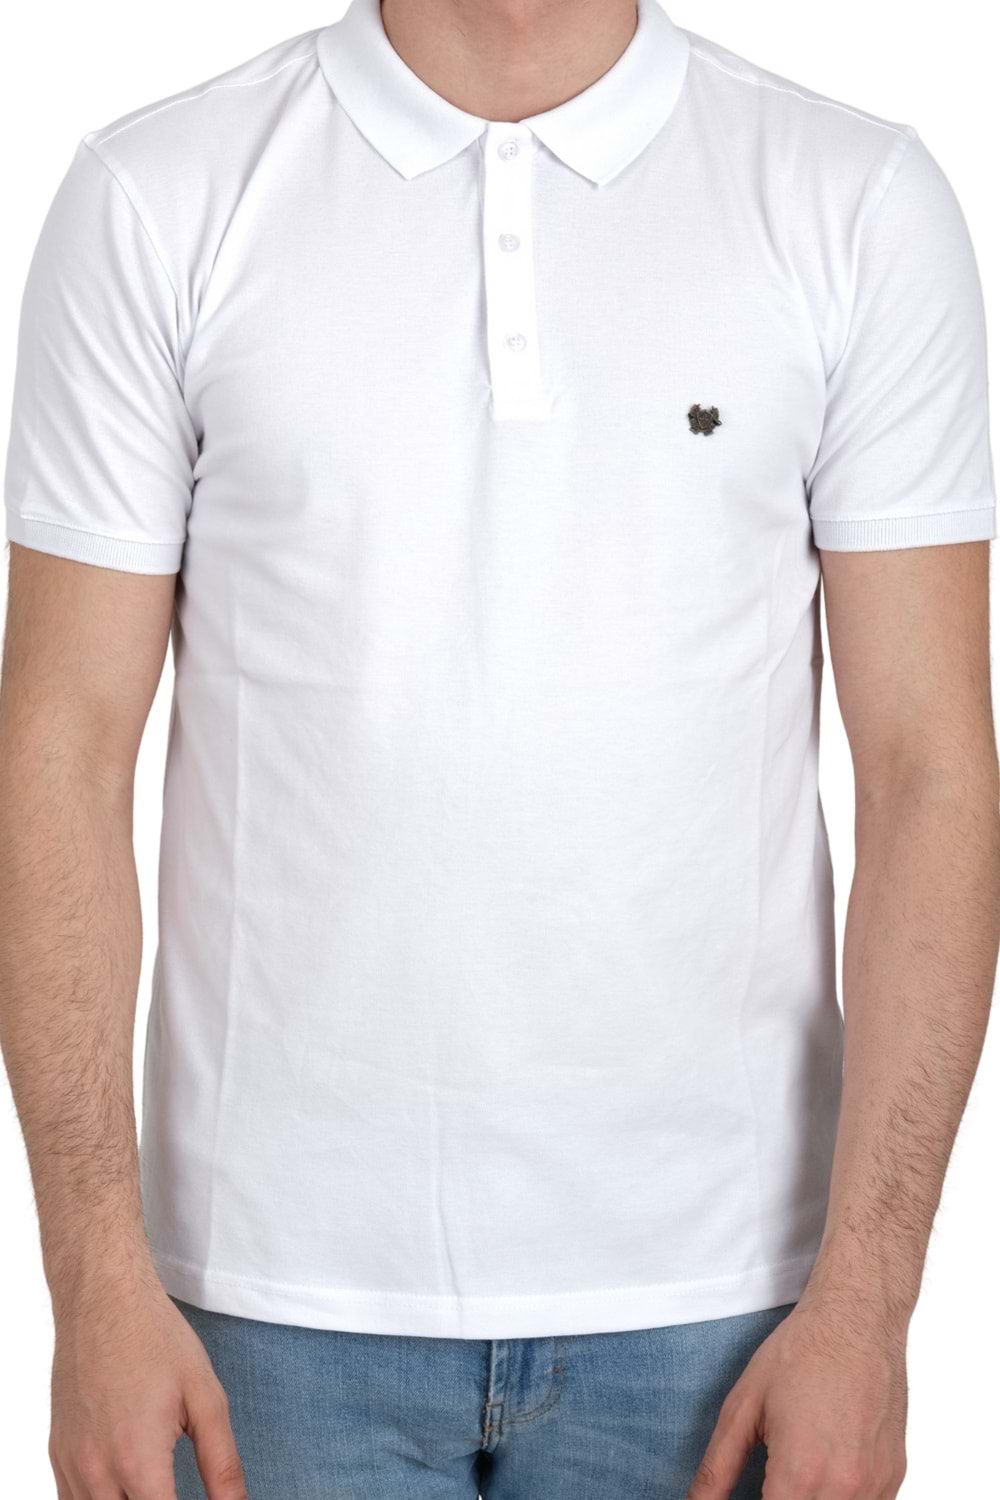 Jerox Beyaz Slim Fit Kısa Kol Polo Yaka Erkek T-Shirt